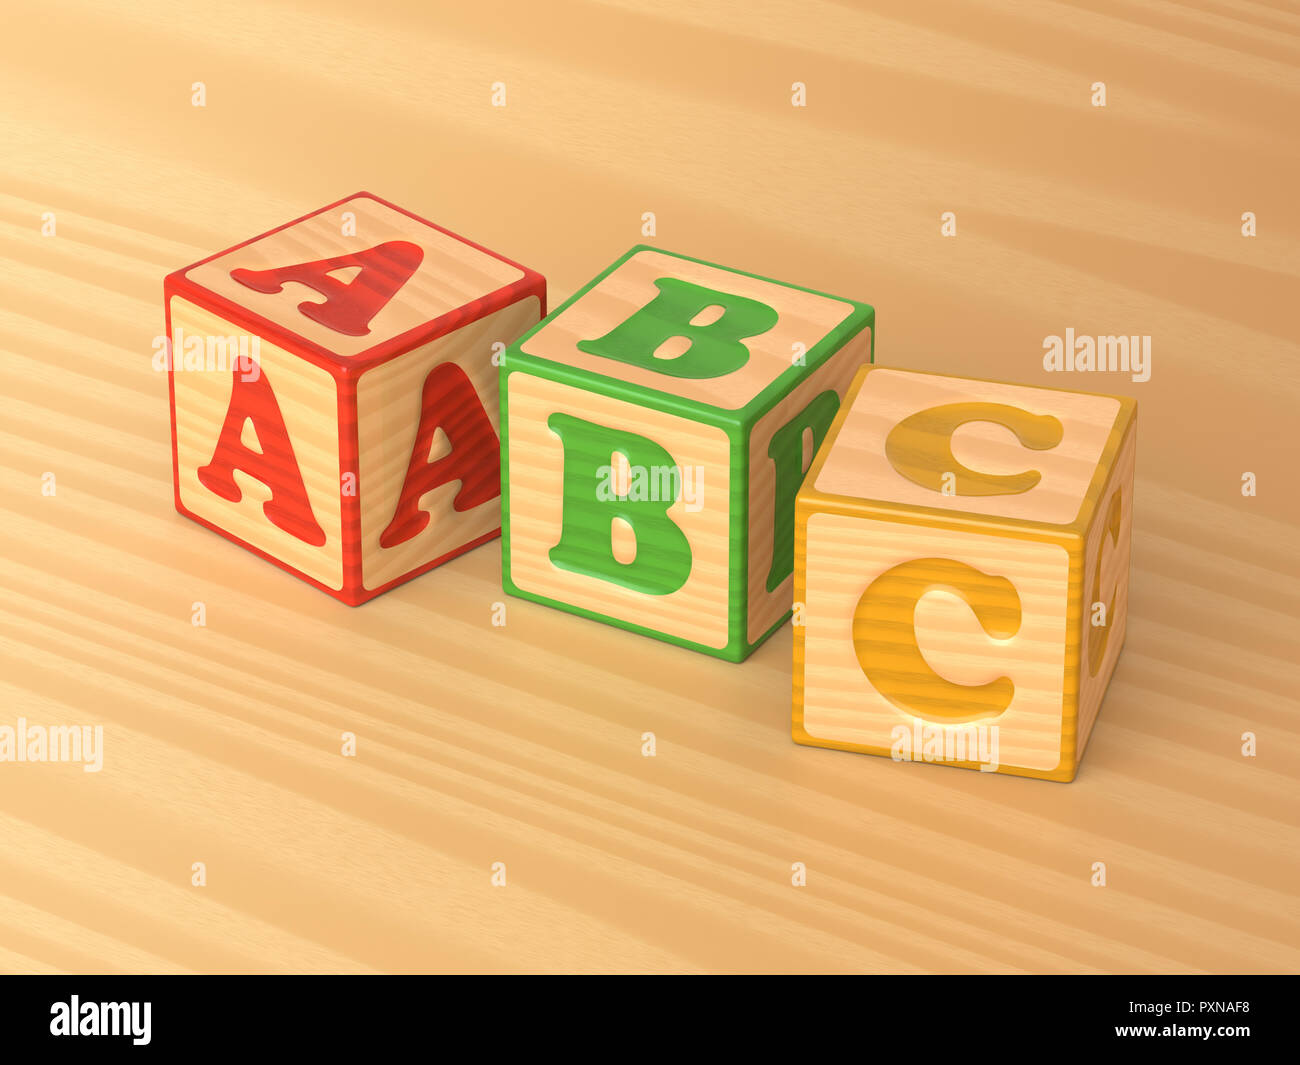 3D-gerenderte schräger Blick auf eine Reihe von roten, grünen und gelben Holzspielzeug alphabet Blöcke auf einem hellen Hintergrund. Stockfoto